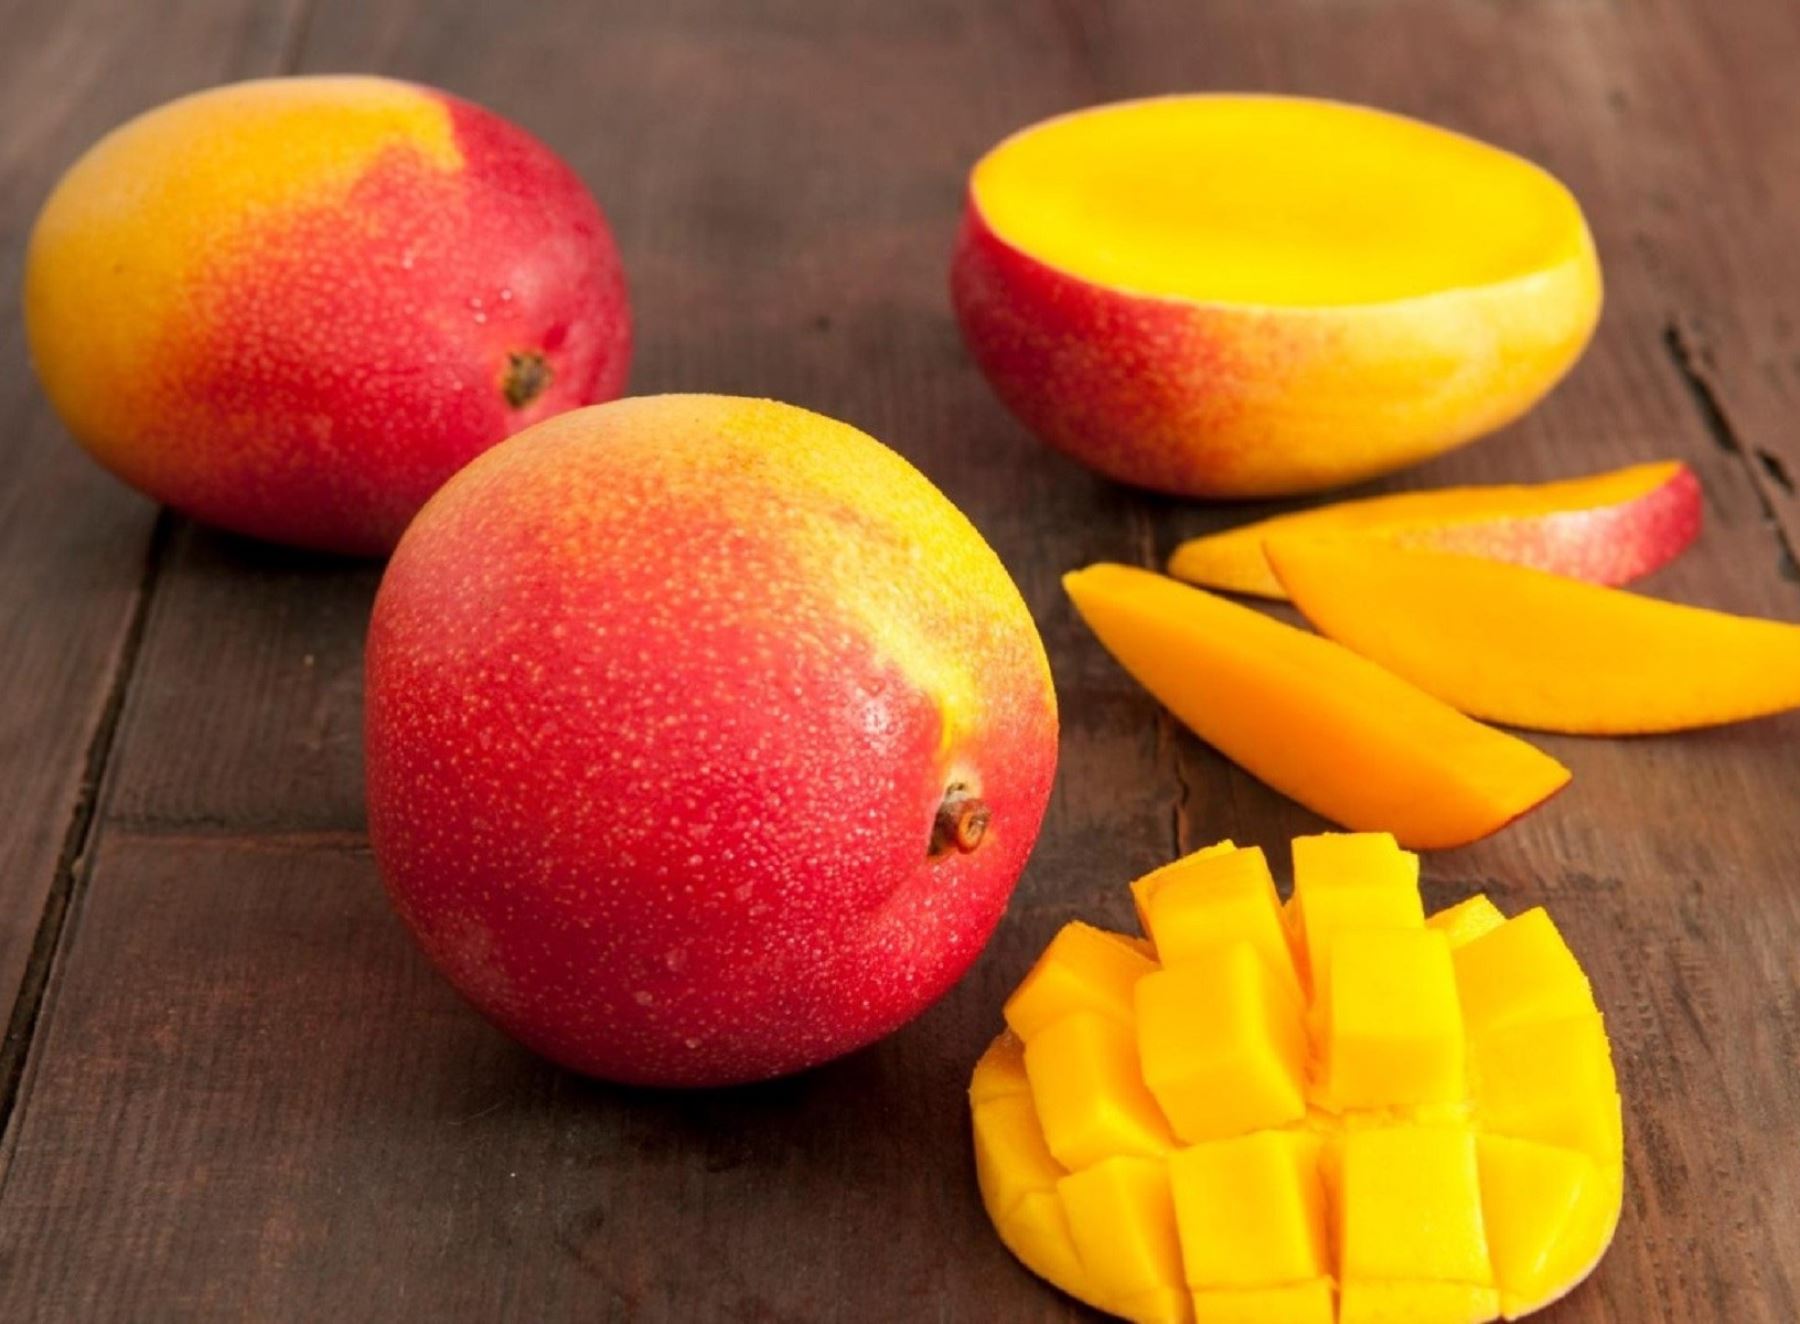 Interactuar cinturón exageración Una fruta con mucho sabor como el mango nos aporta estos 4 beneficios